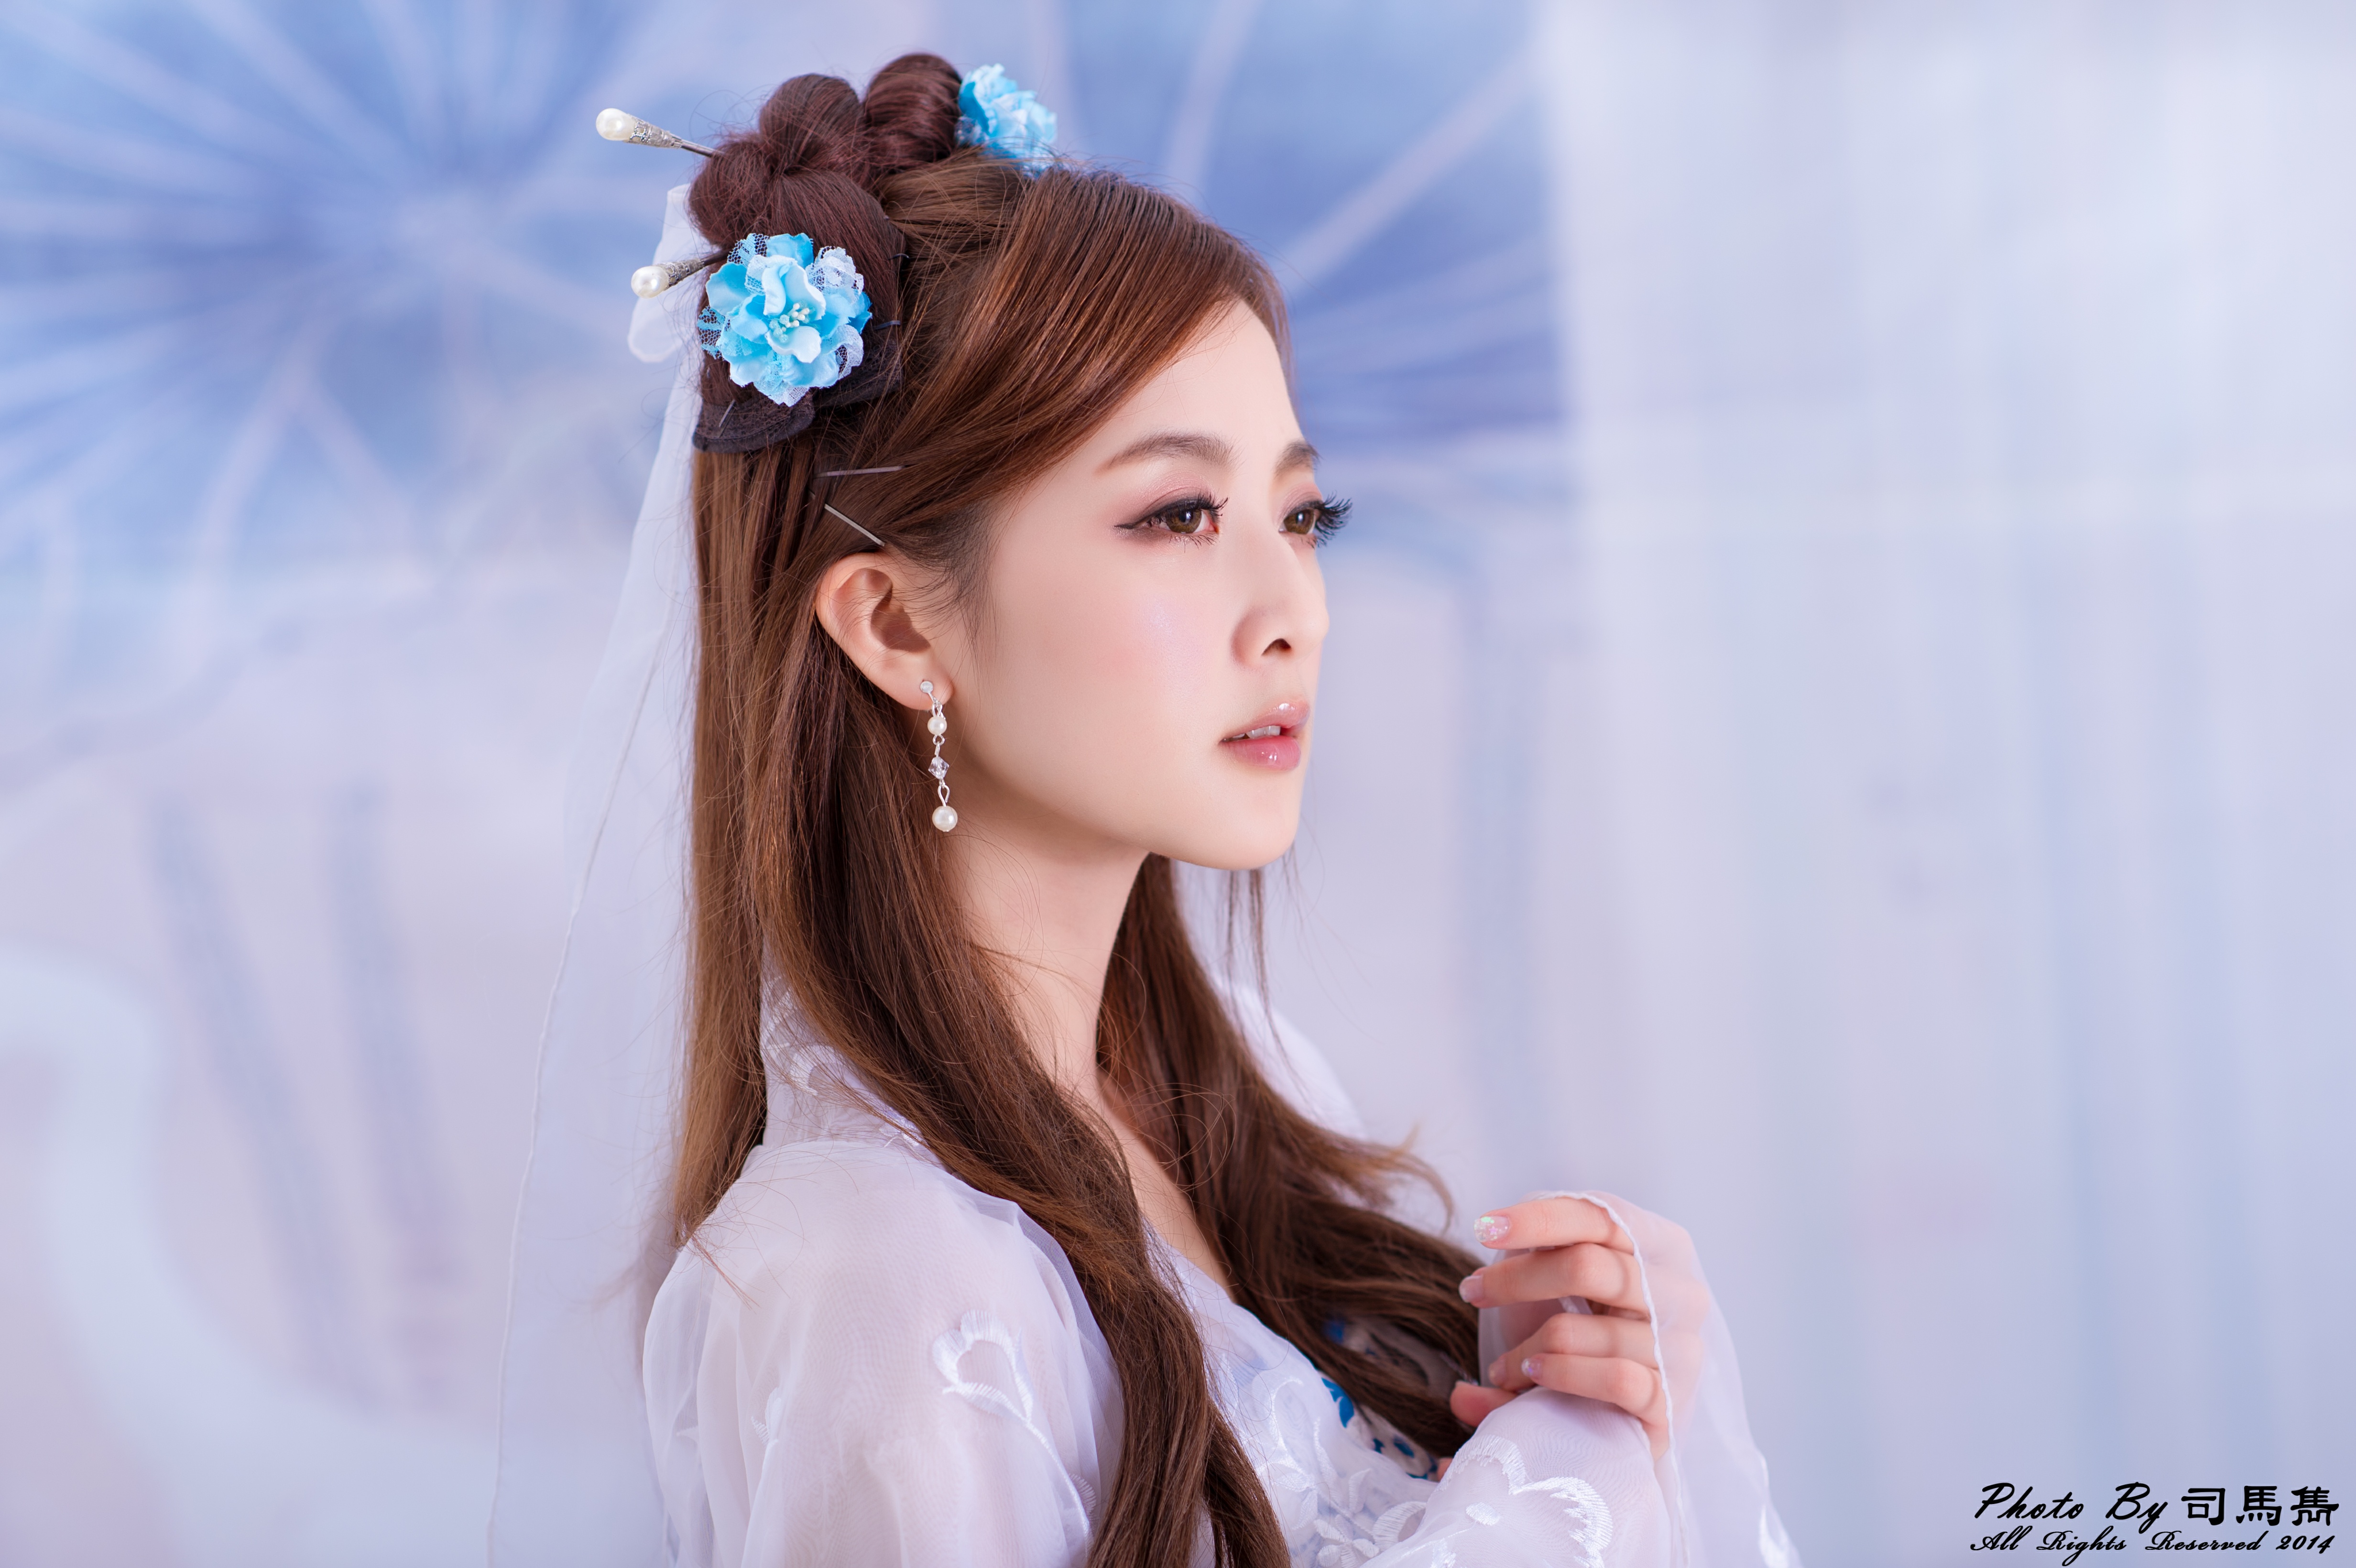 Mikako Zhang Kaijie Asian Taiwanese Chinese Hair Dress Hairpin Earrings Face 4928x3280